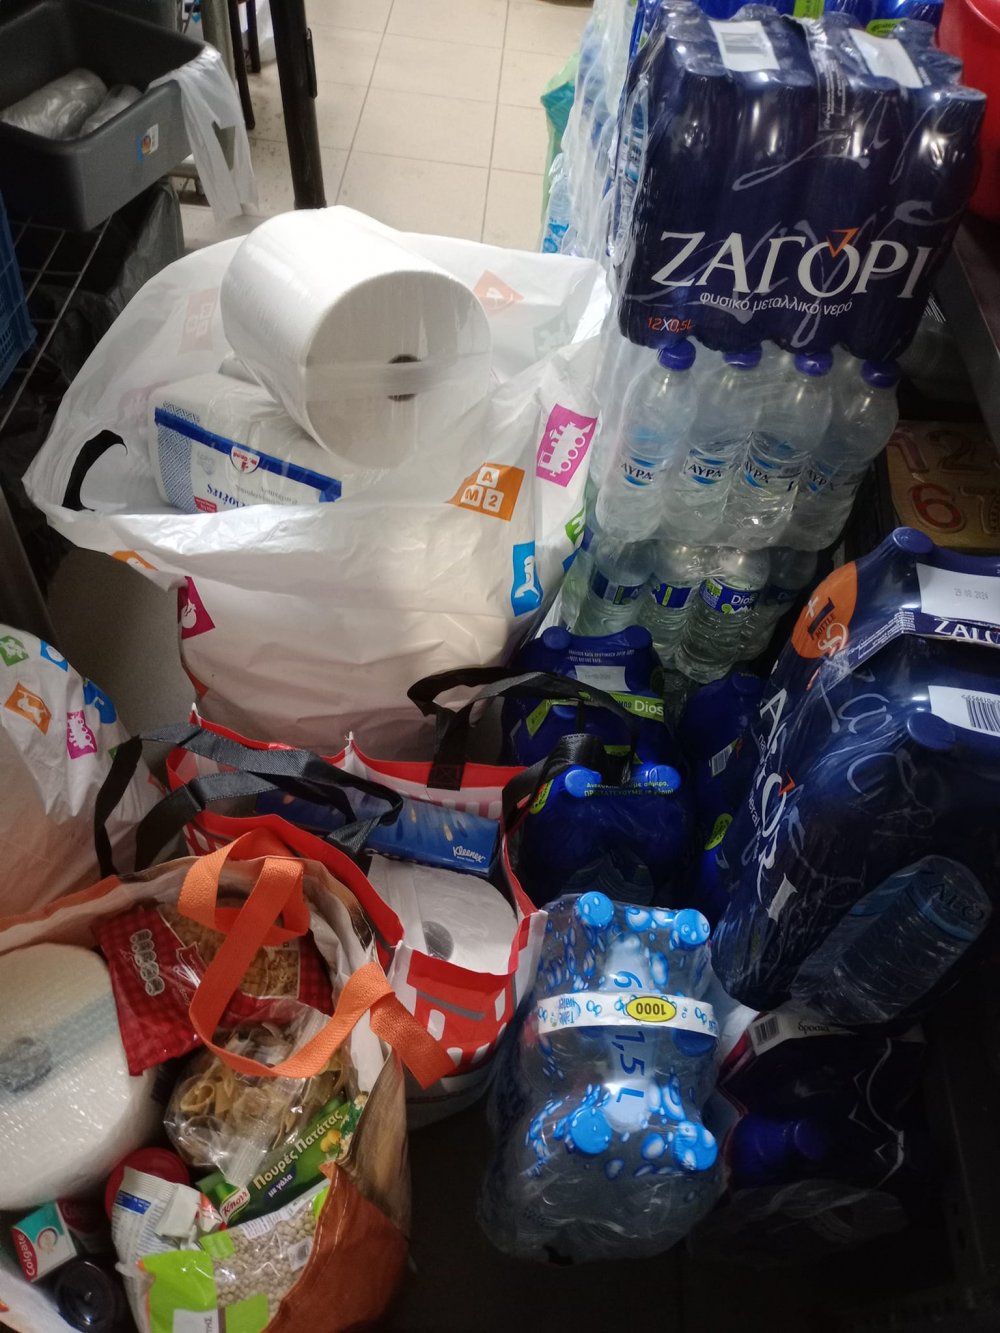 Η Κουζίνα Αλληλεγγύης Βόλου έλαβε αναγκαία αγαθά από τους κατοίκους της Πέλλας και Θεσσαλονίκης για τους πλημμυροπαθείς της περιοχής μας